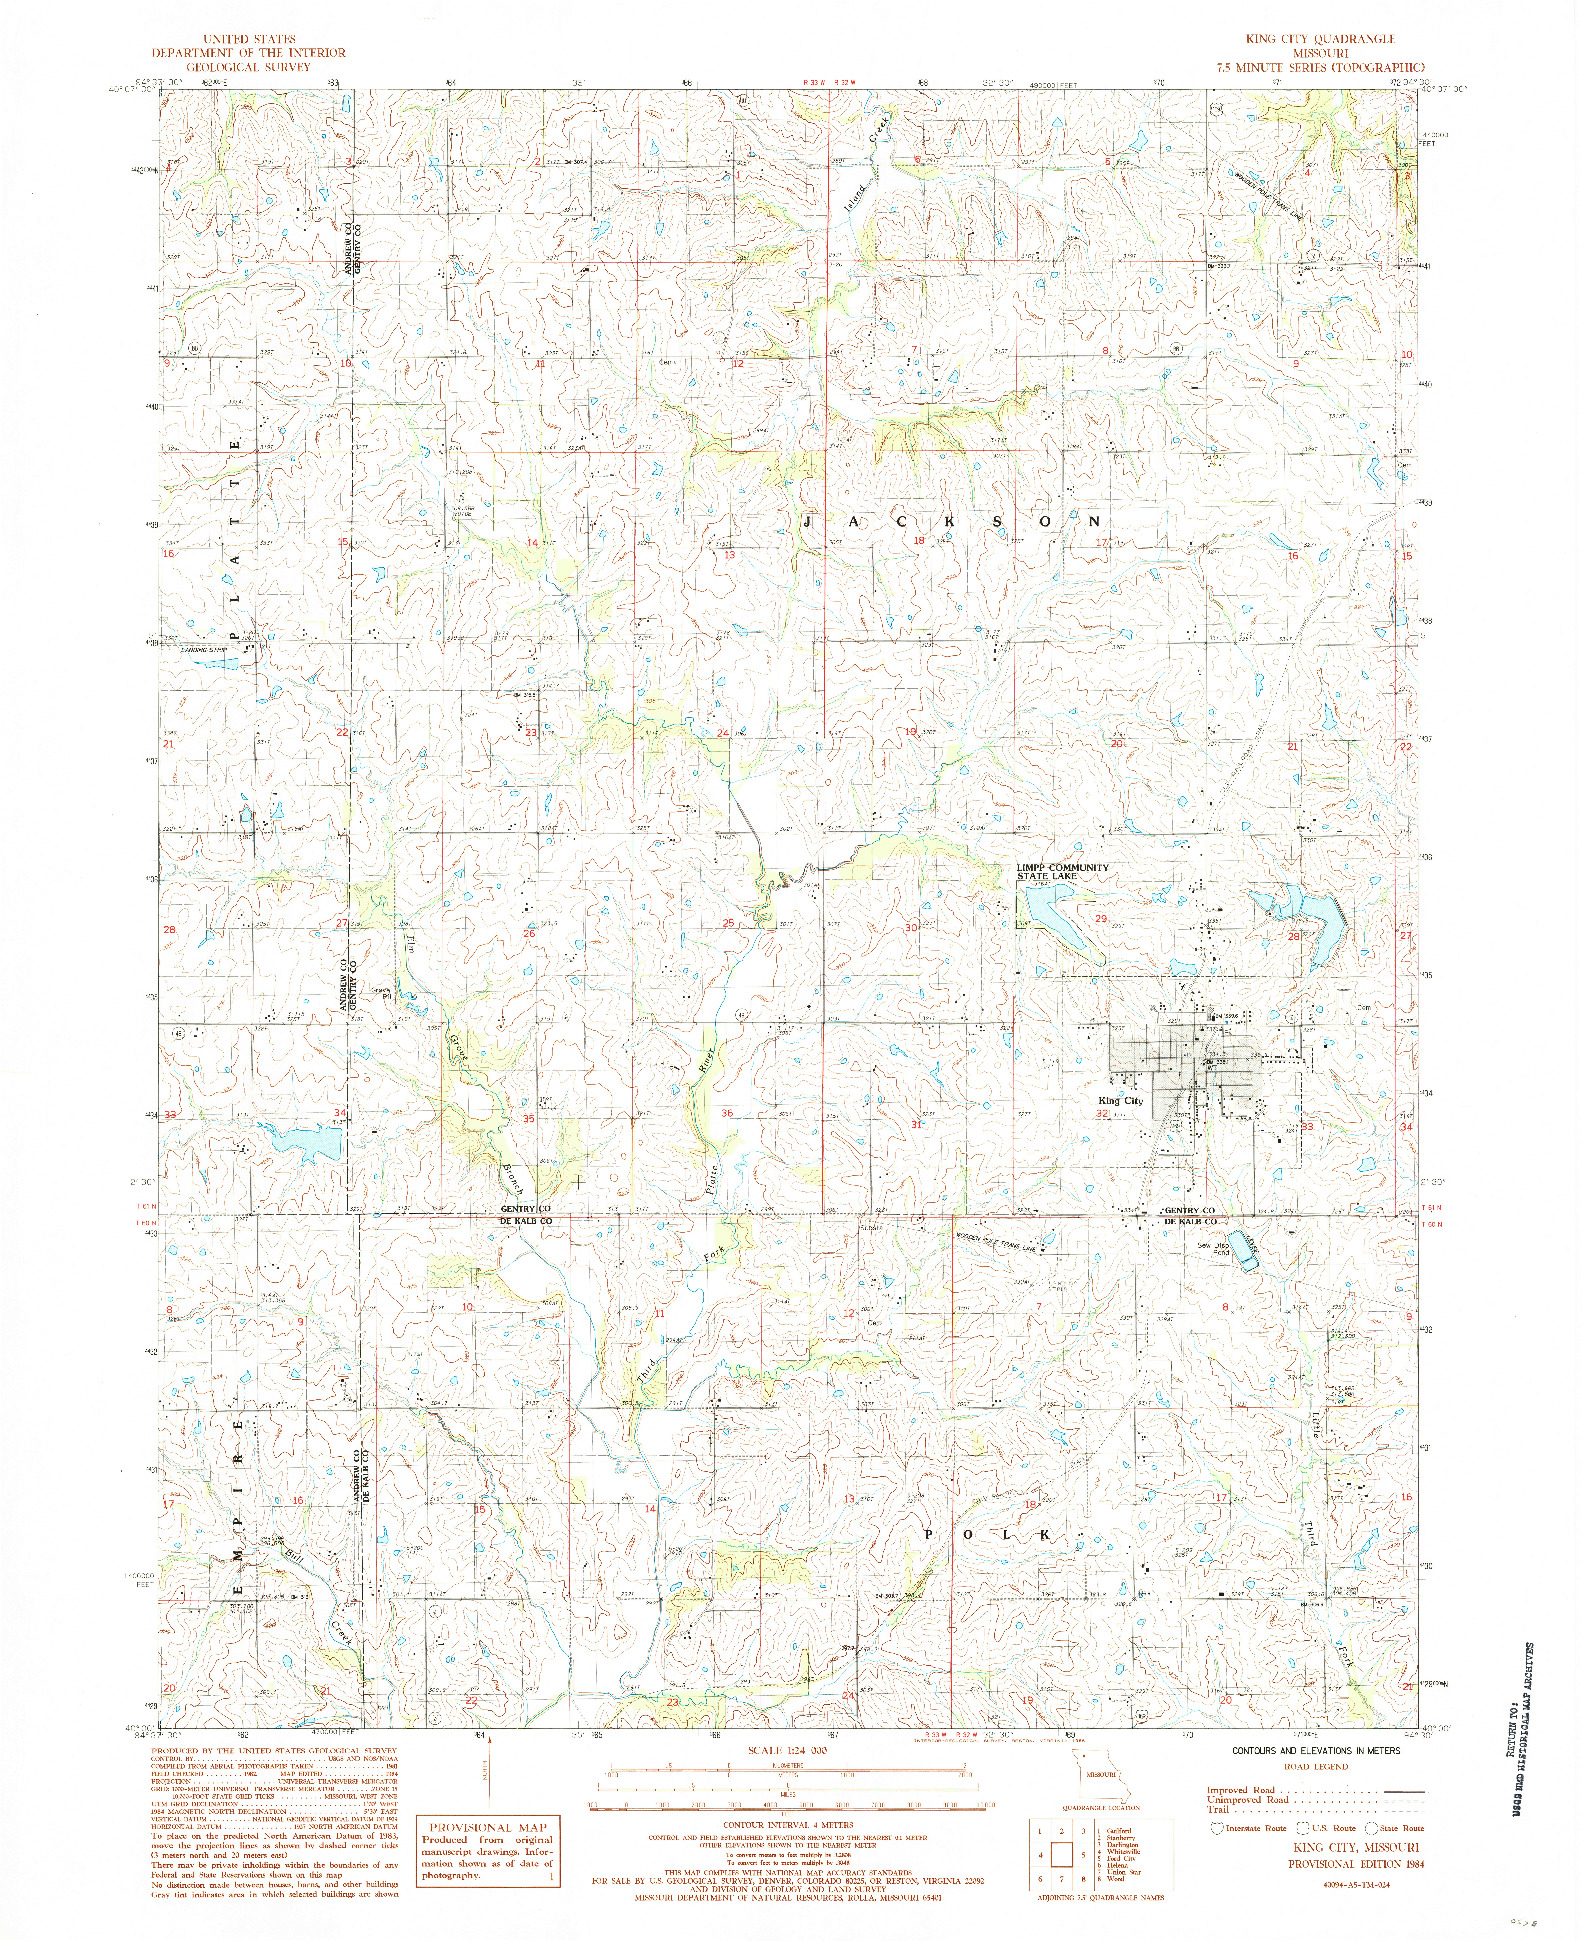 USGS 1:24000-SCALE QUADRANGLE FOR KING CITY, MO 1984